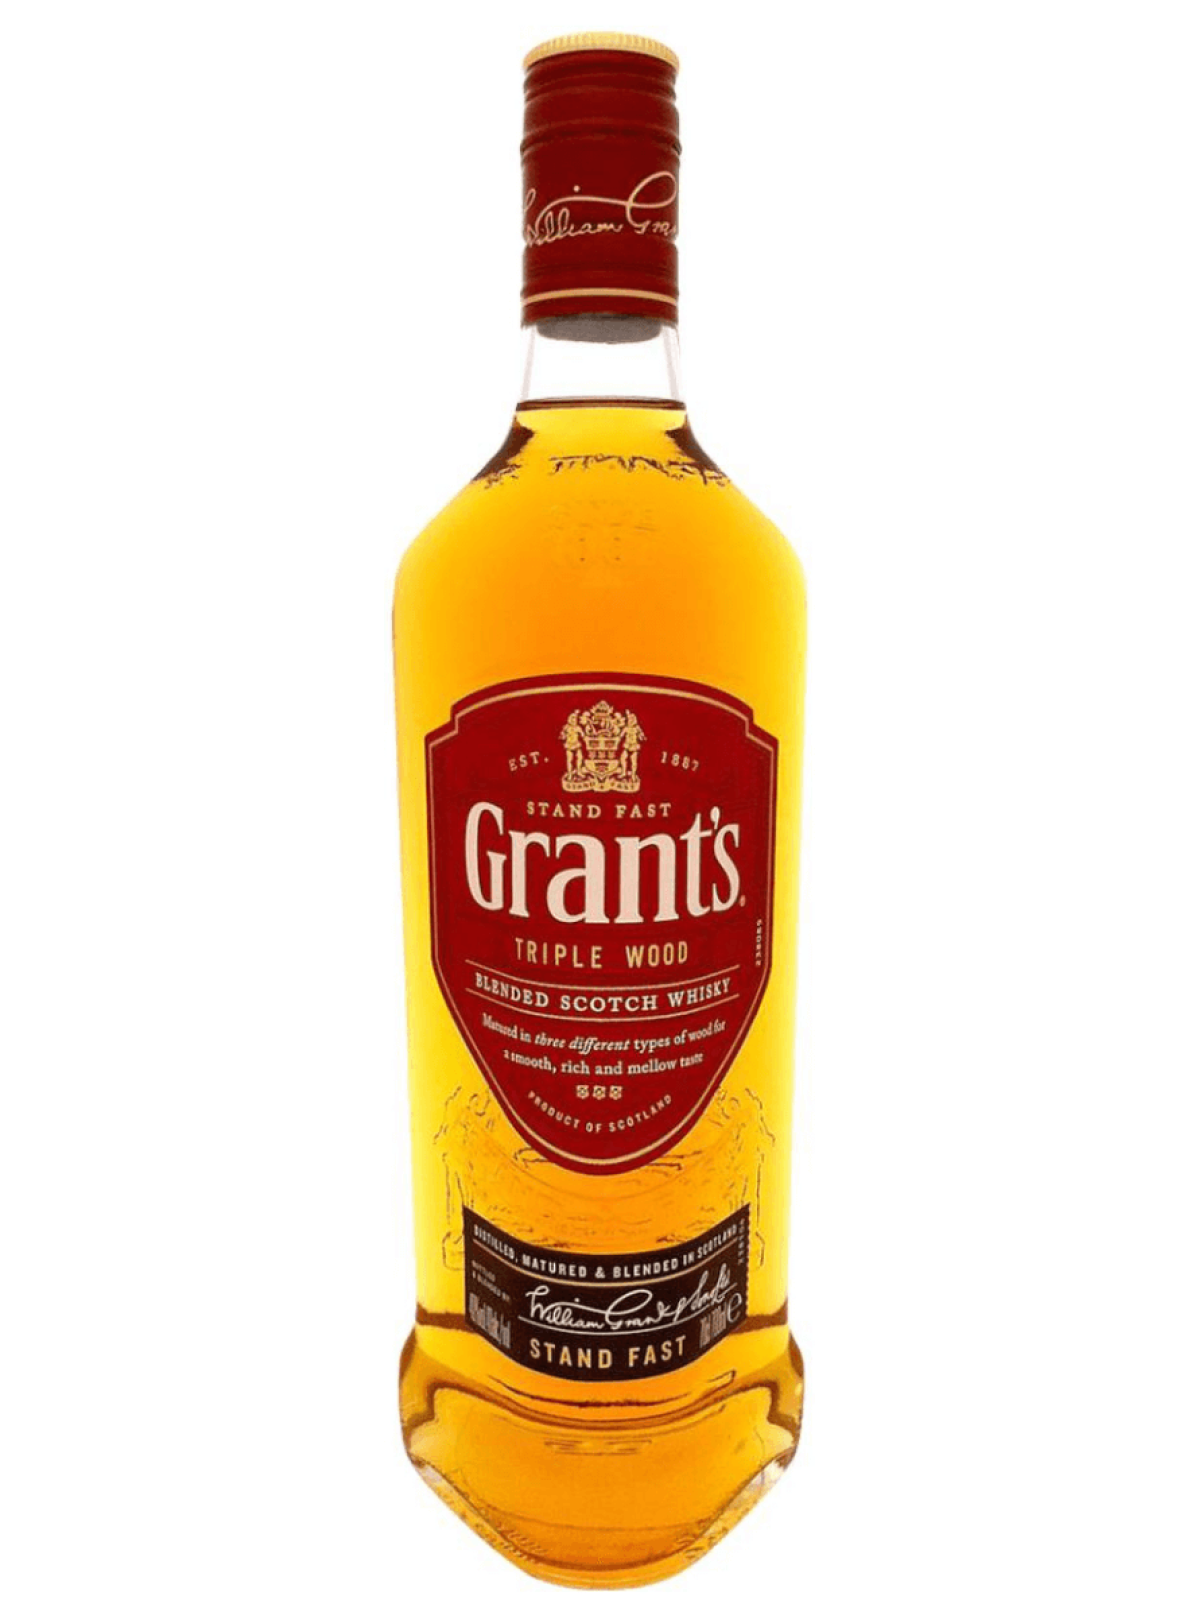 Grants 0.7 цена. Грантс трипл Вуд 0.5. Виски Грантс трипл Вуд 0.7. Виски Грантс трипл Вуд 3 года 0,5л. Виски Грантс трипл Вуд 0.70.